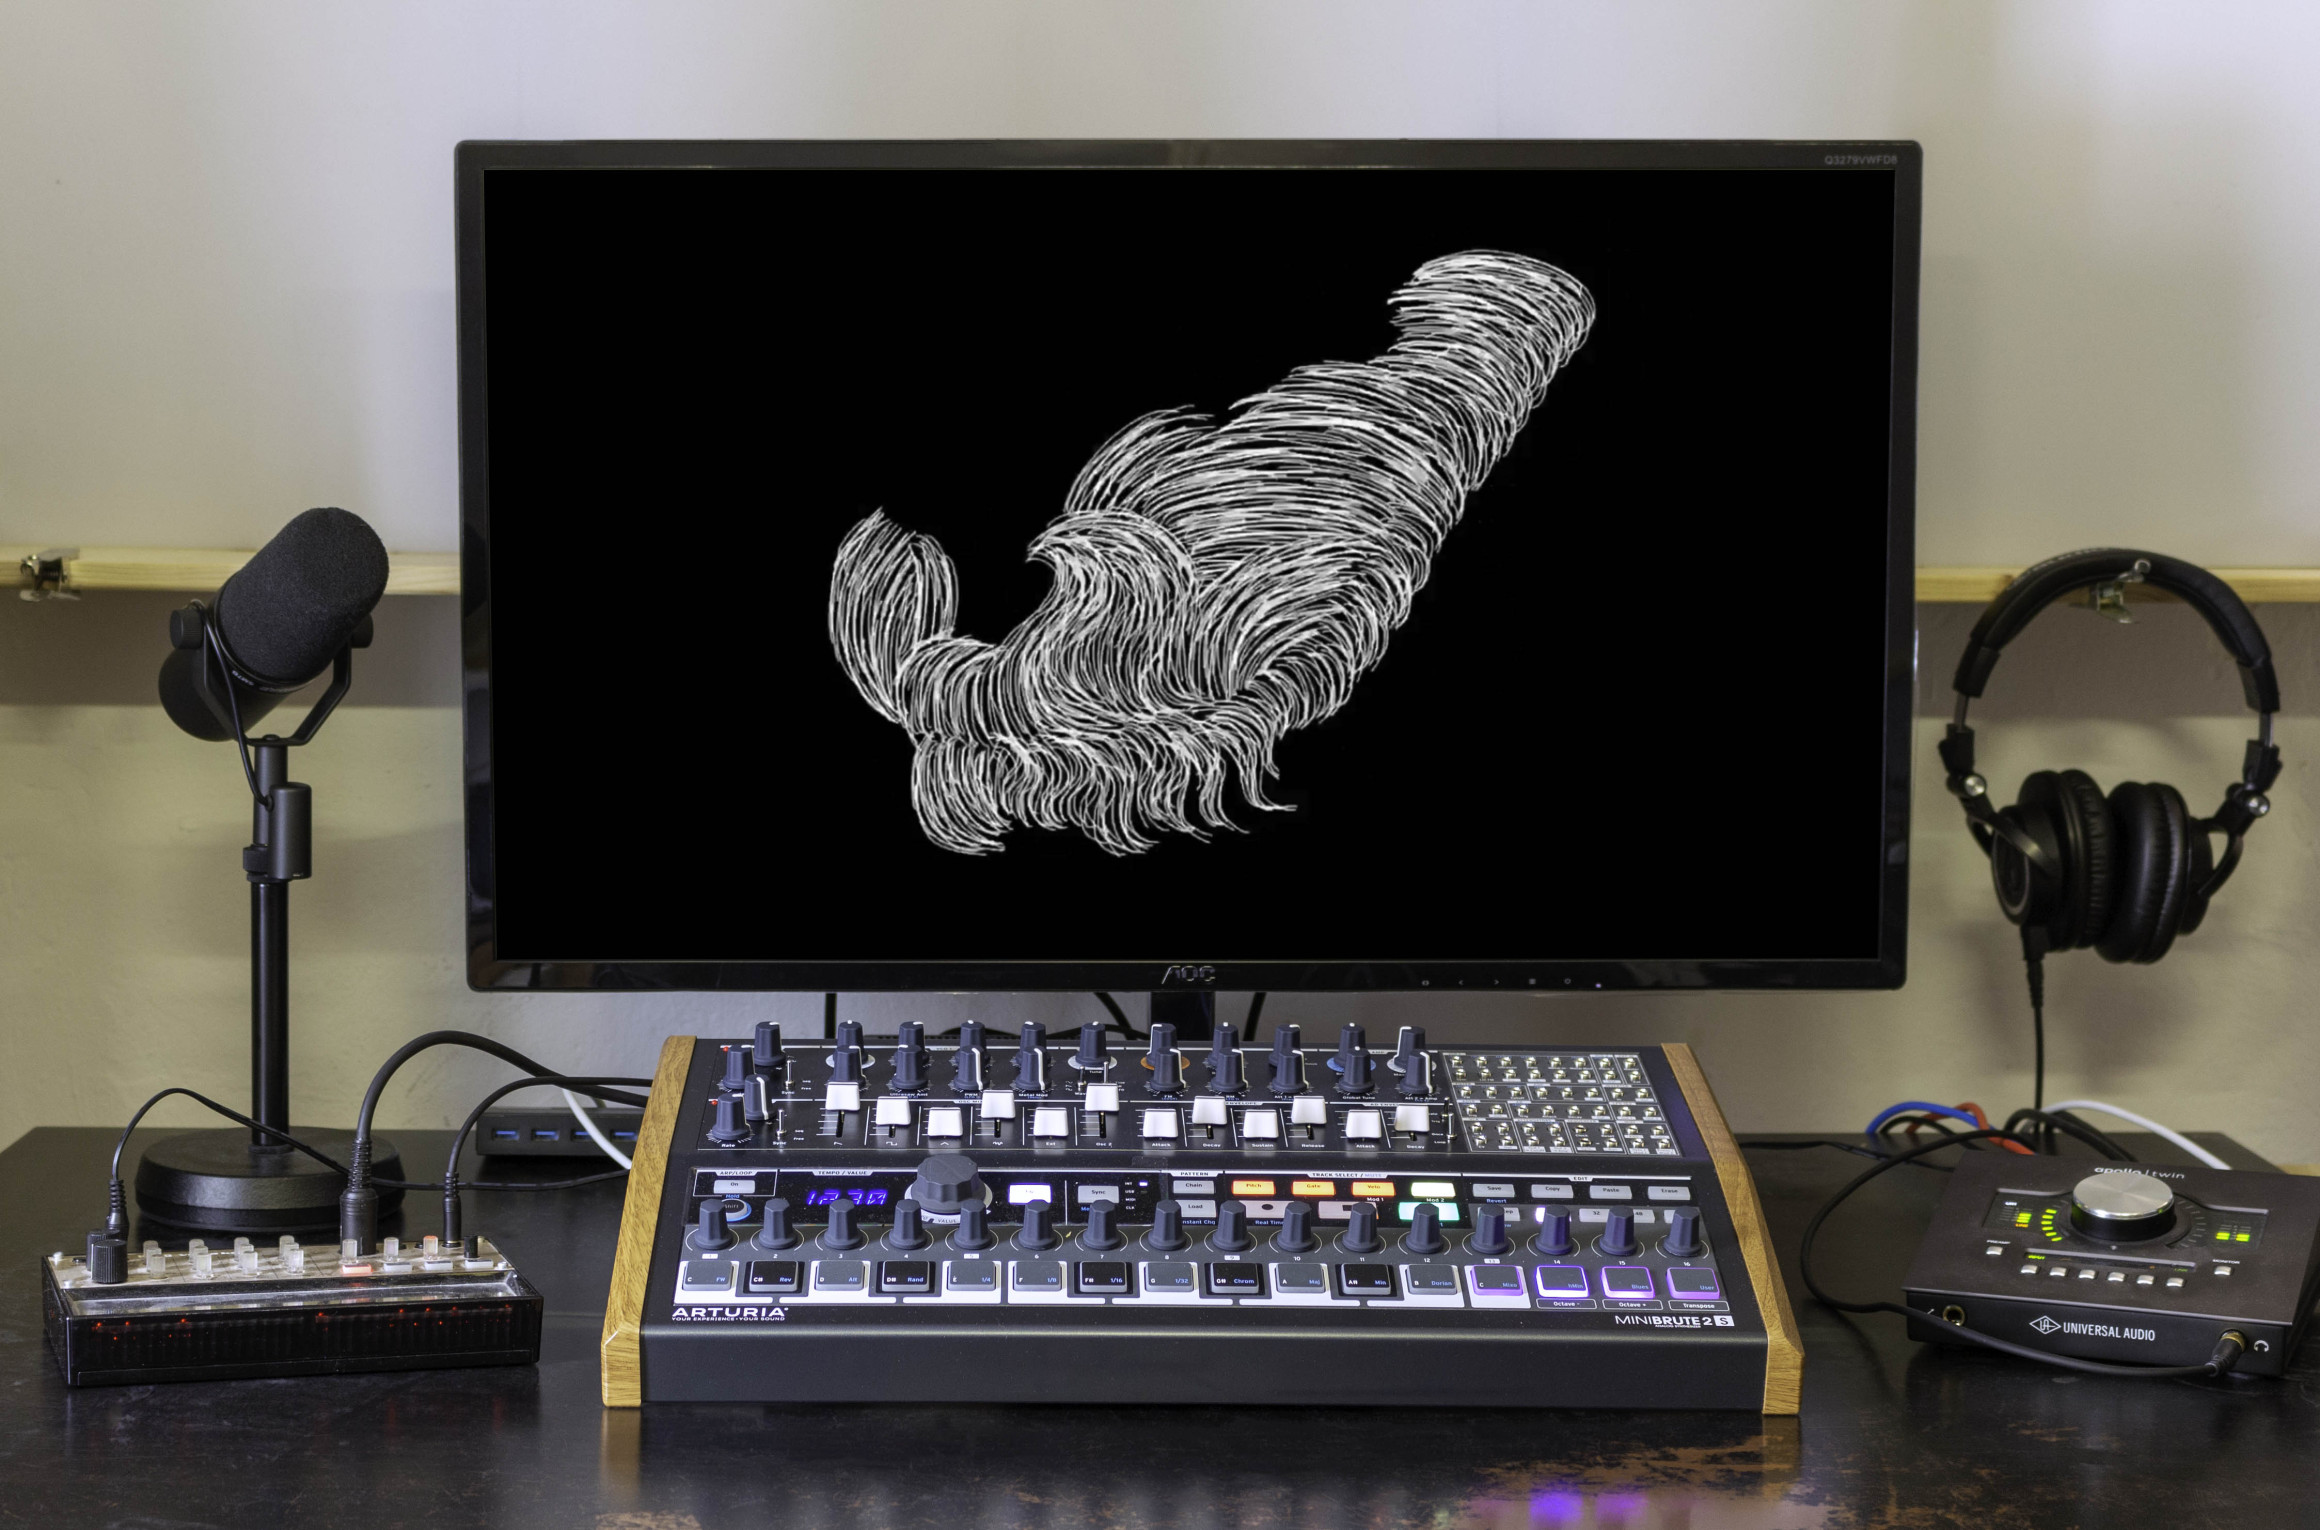 Schreibtisch mit Bildschirm, Kopfhörern, Mikrofon und Mischpult. Auf dem Bildschirm ist ein Standbild des Musikvideos zu sehen: eine abstrakte weiße Form auf schwarzem Hintergrund.